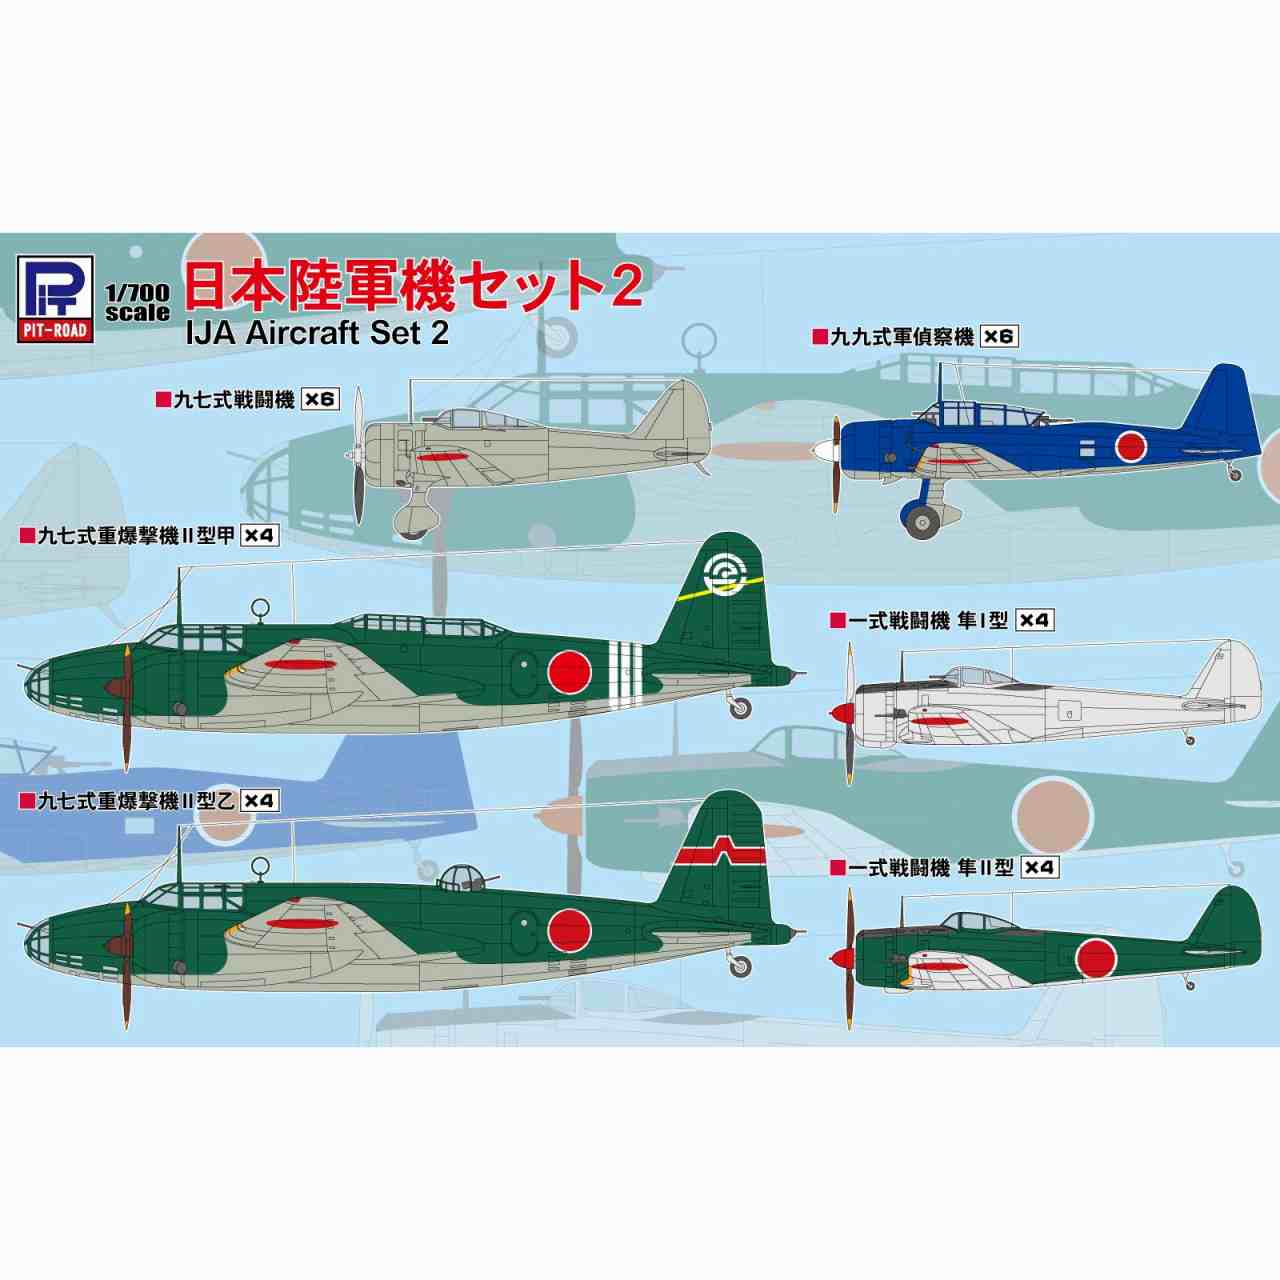 【新製品】S69 1/700 日本陸軍機セット2